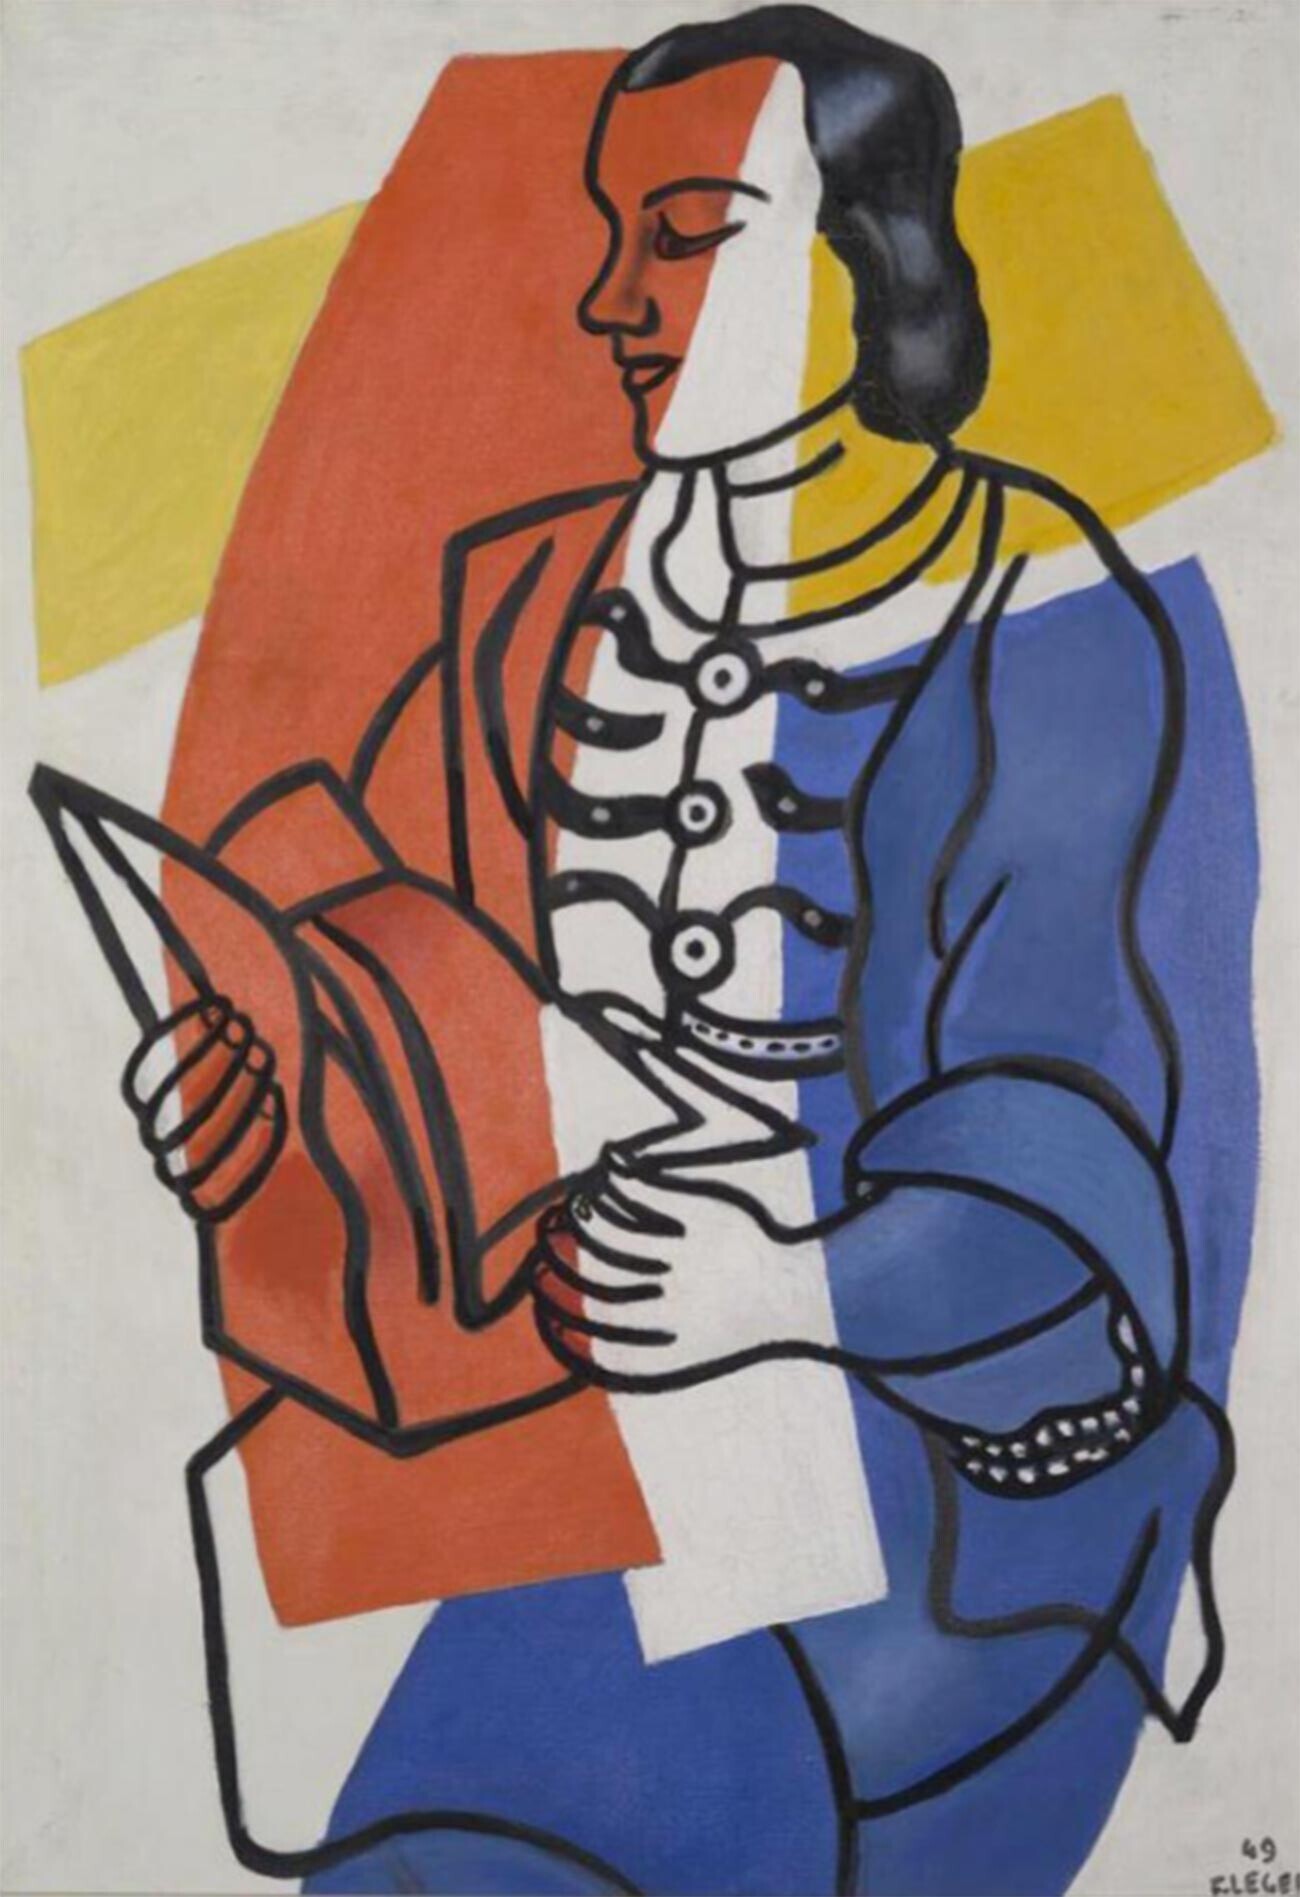 Membaca (potret Nadia Léger),  oleh Fernand Leger. 1949.